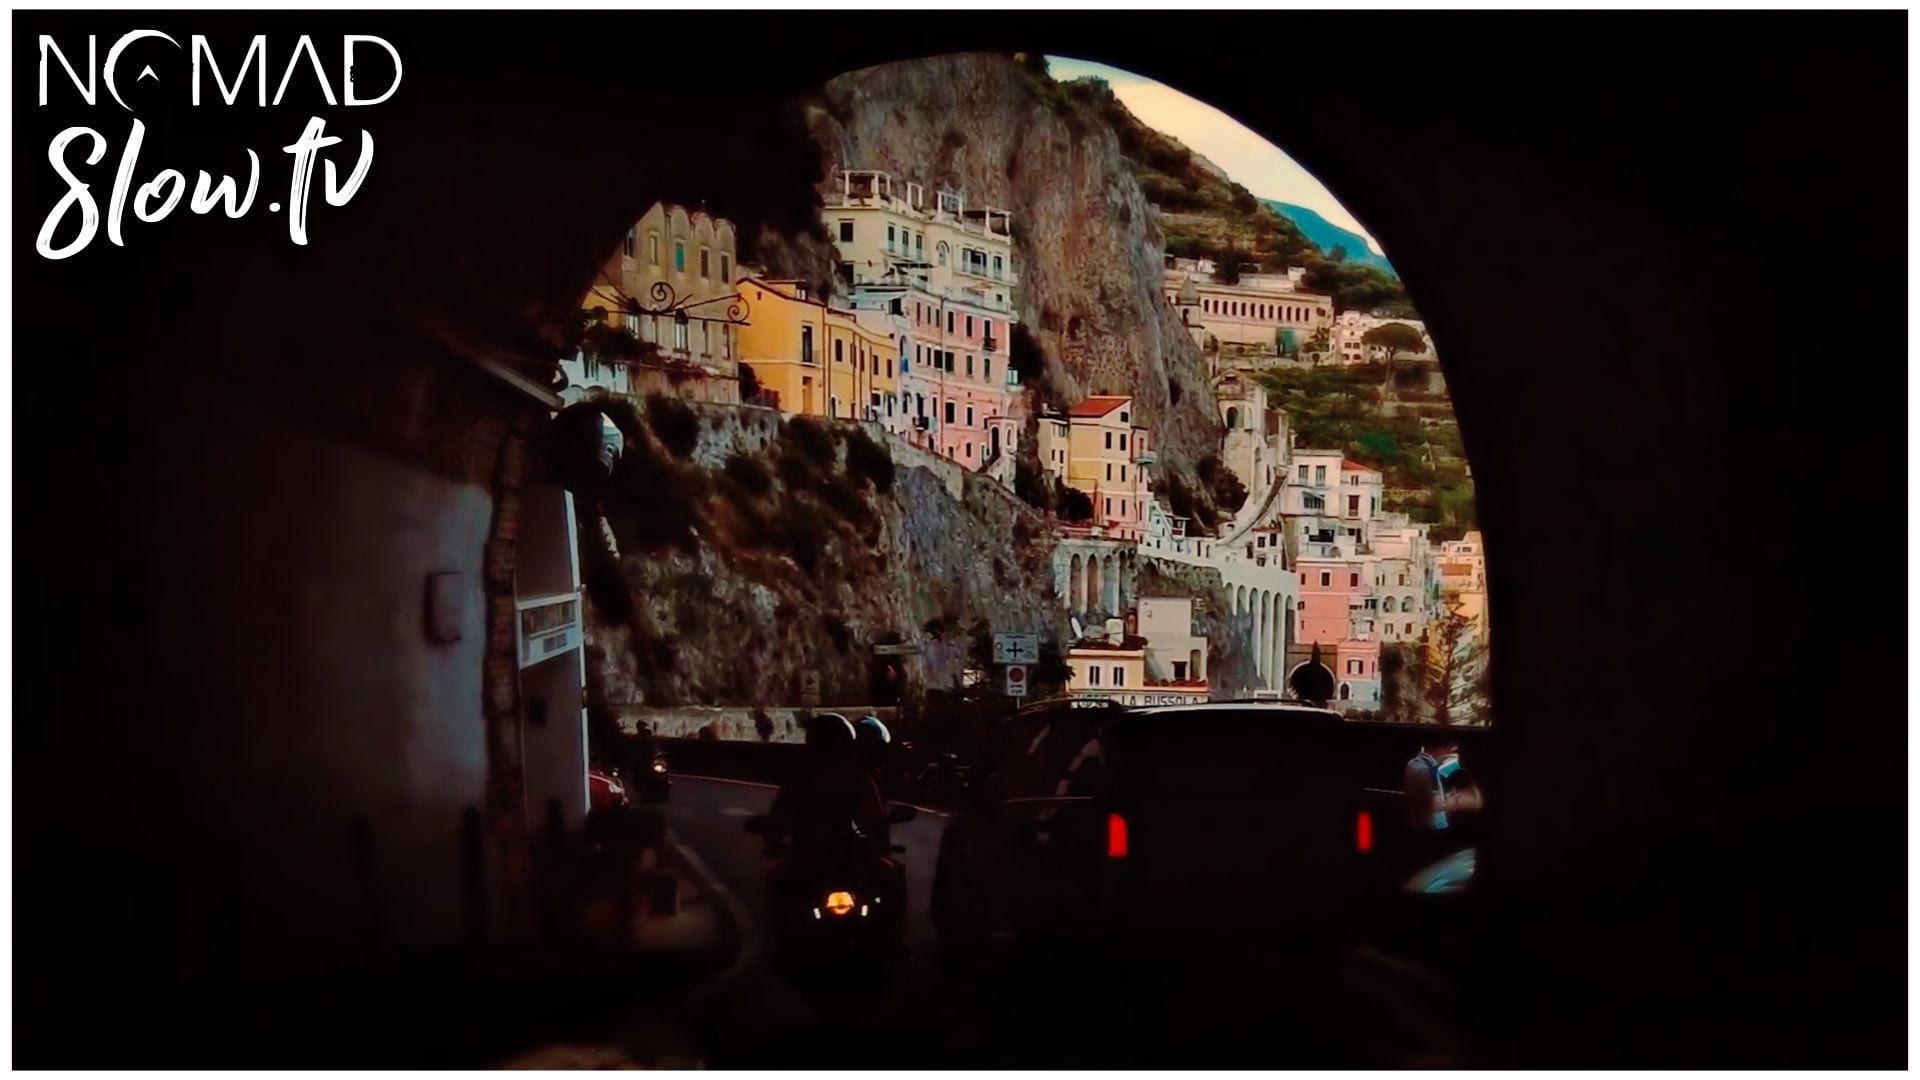 The Amalfi Coast NOMADslow.TV trailer